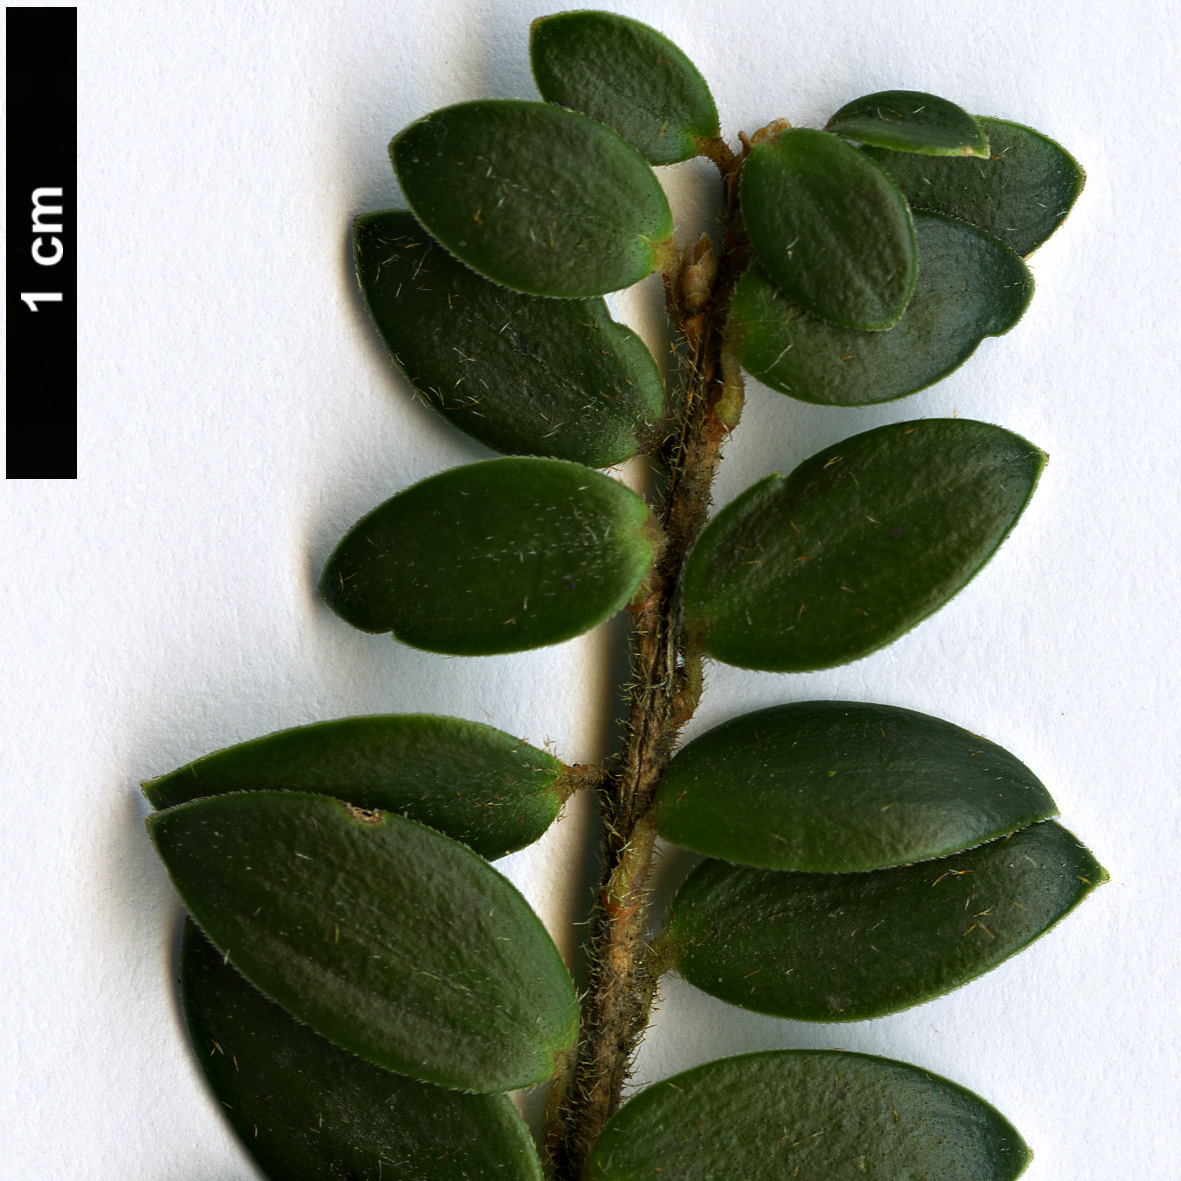 High resolution image: Family: Ericaceae - Genus: Trochocarpa - Taxon: gunnii